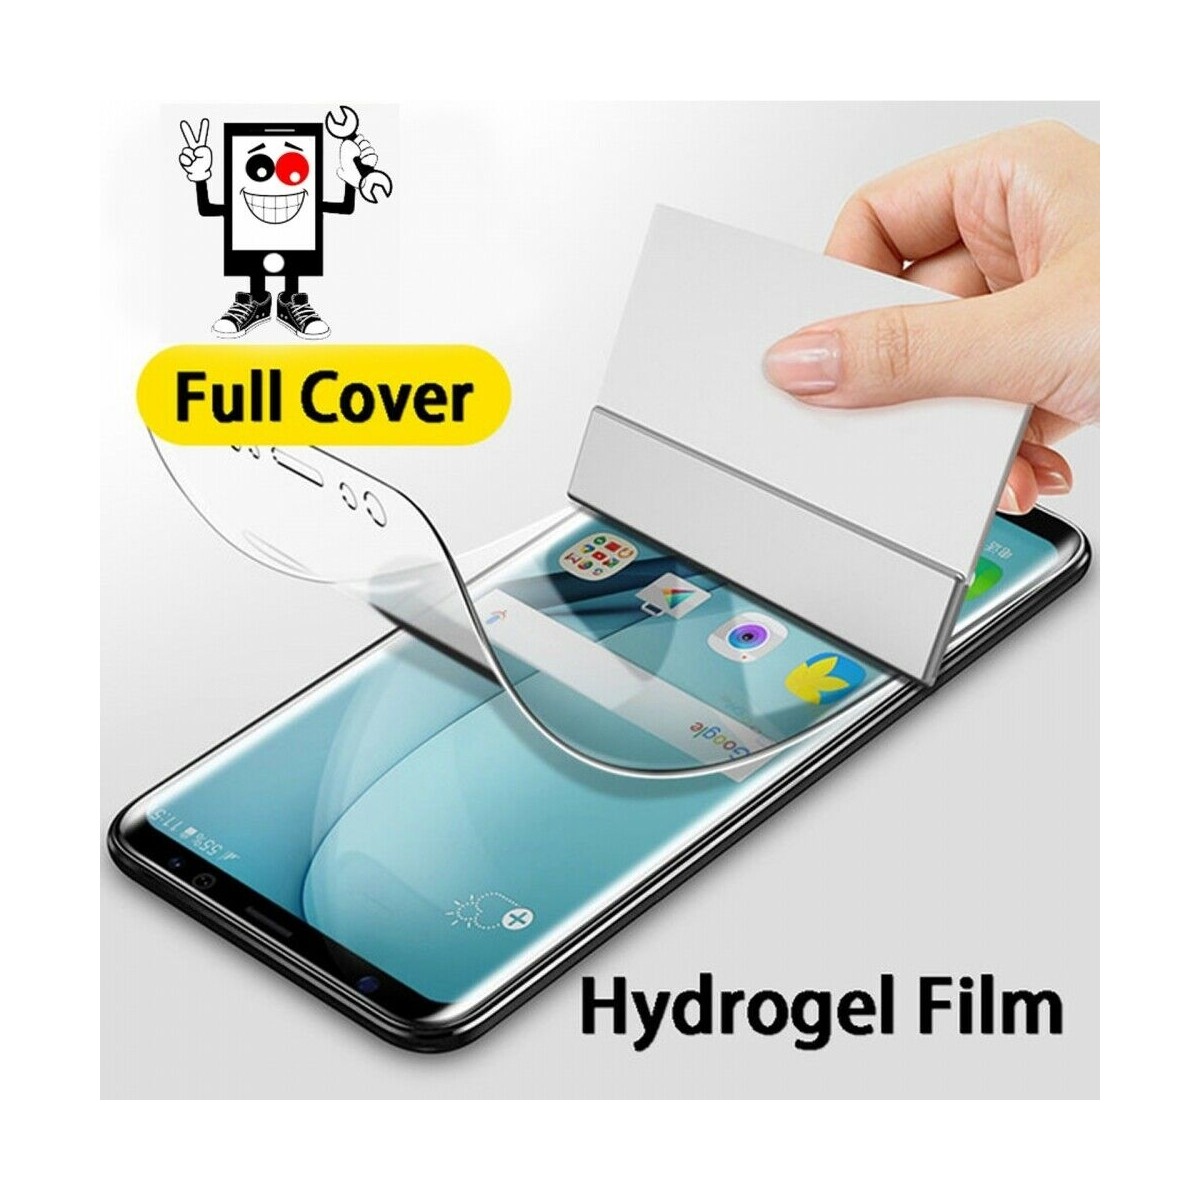 Protector Trasero Autorreparable de Hidrogel para Apple iPhone 6